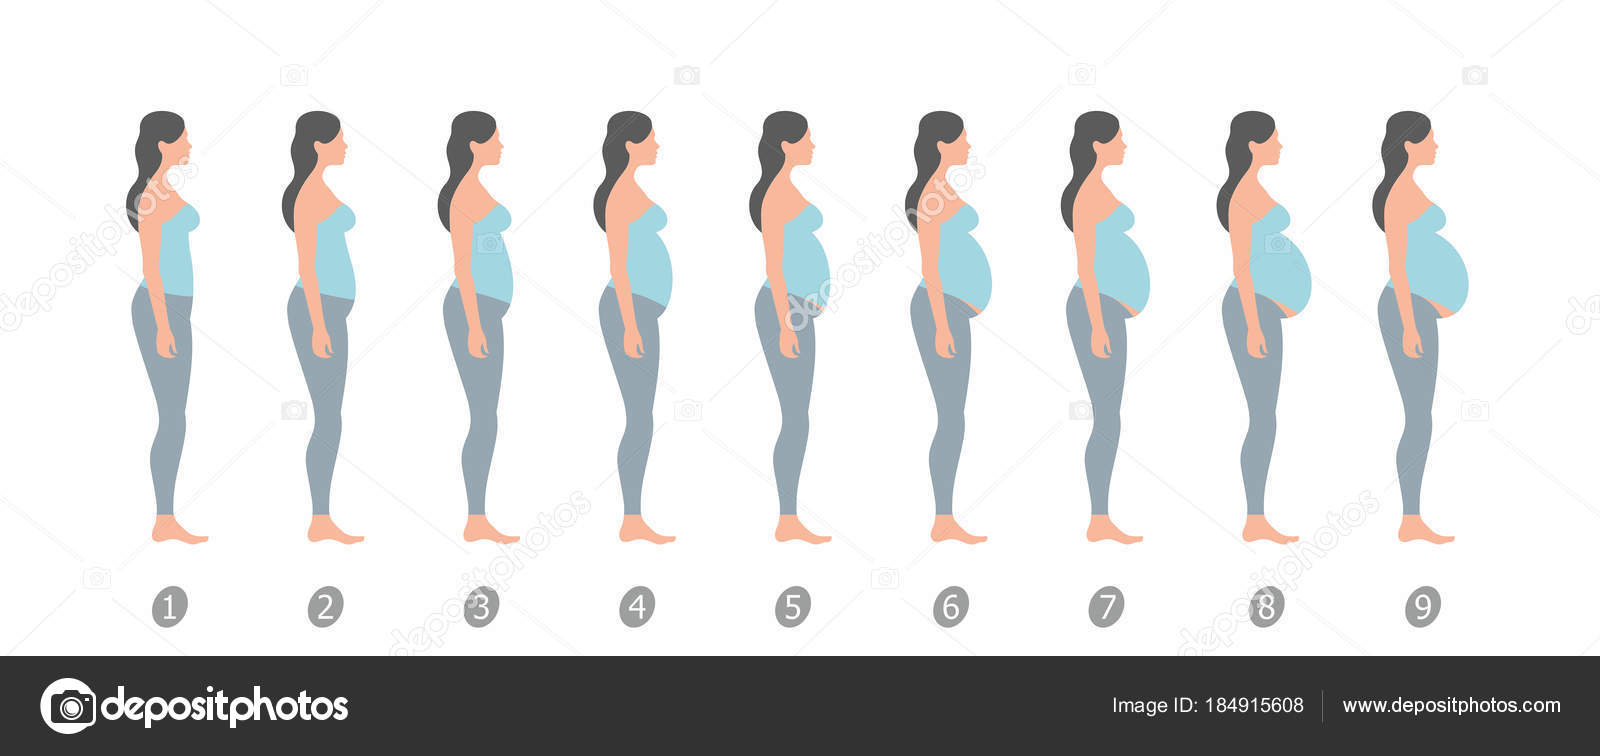 на первом месяце беременности увеличивается грудь фото 86